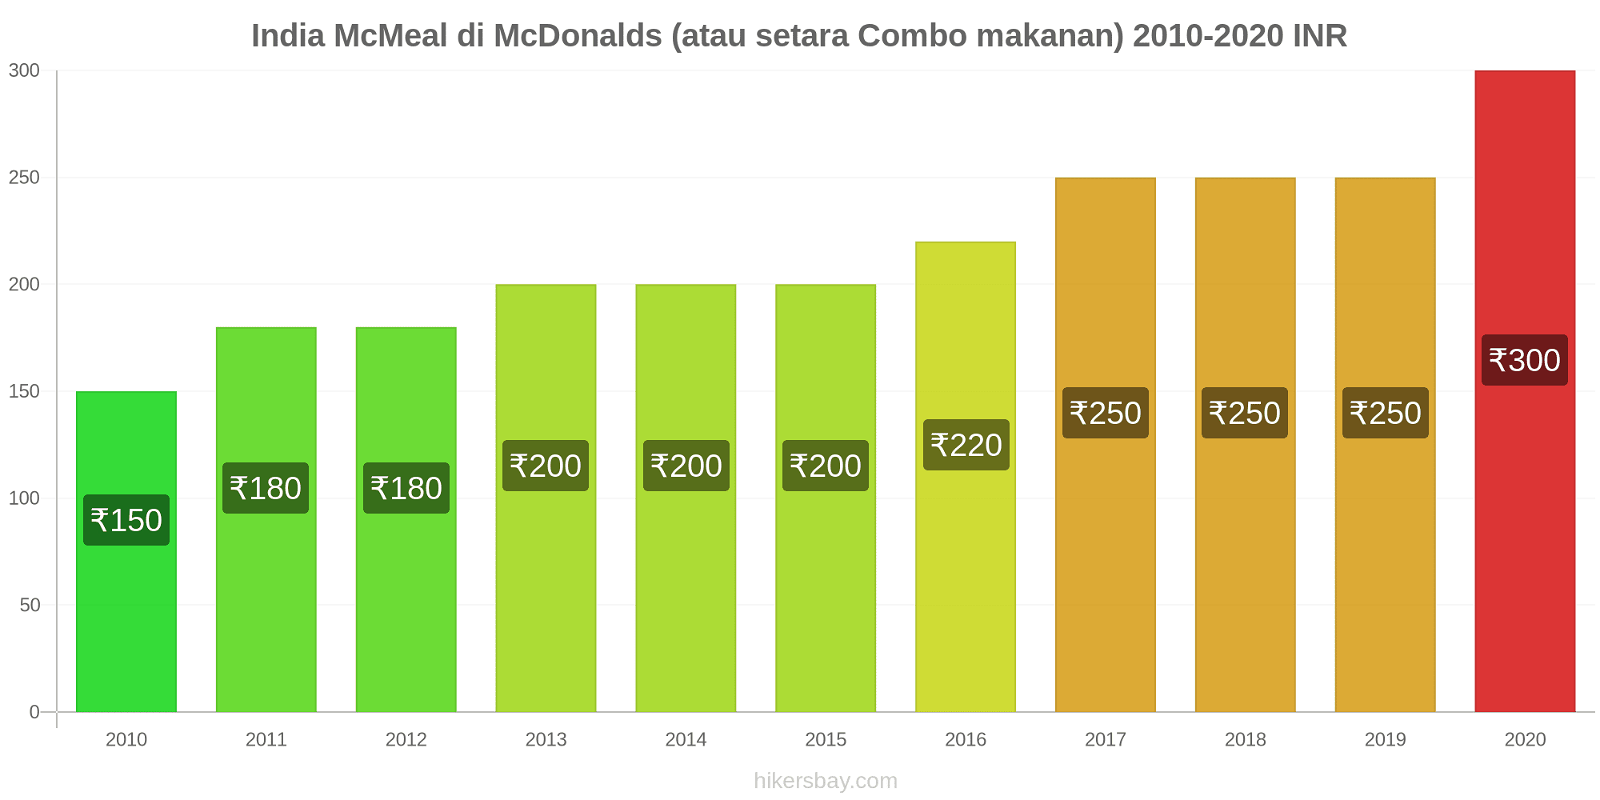 India perubahan harga McMeal di McDonalds (atau setara Combo makanan) hikersbay.com